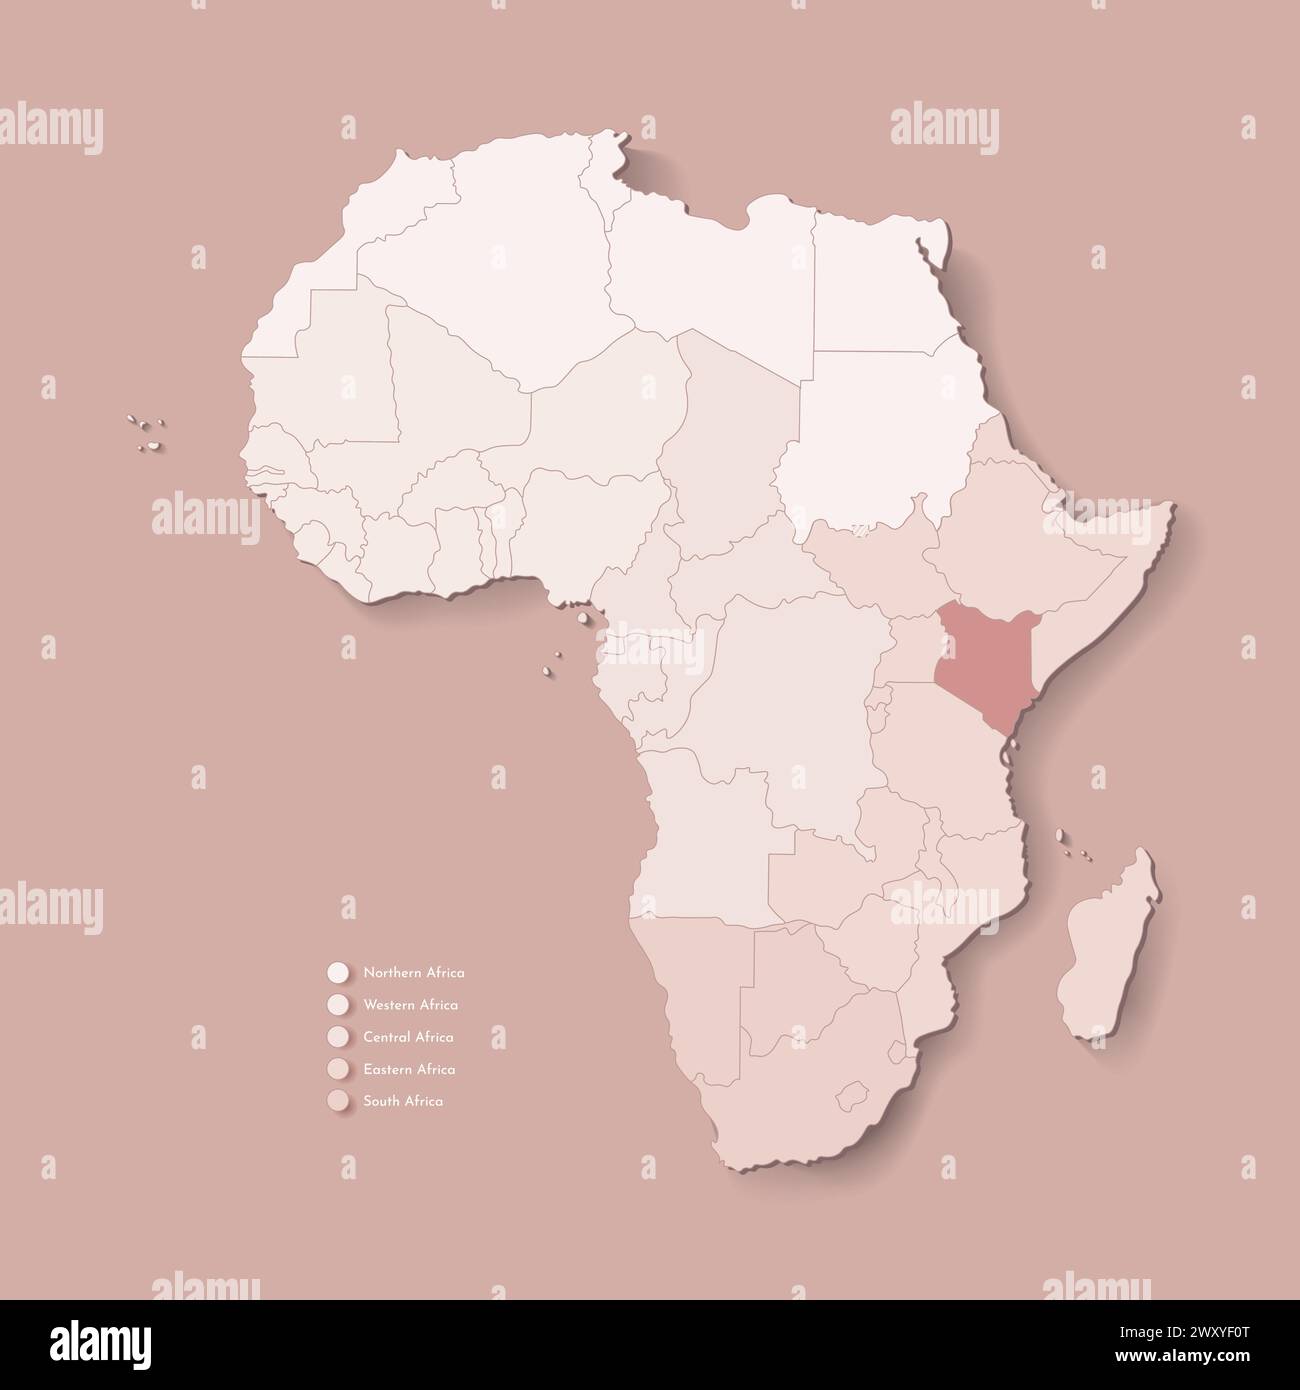 Illustrazione vettoriale con continente africano con confini di tutti gli stati e paese marcato Kenya. Mappa politica di colore marrone con occidentale, sud e. Illustrazione Vettoriale